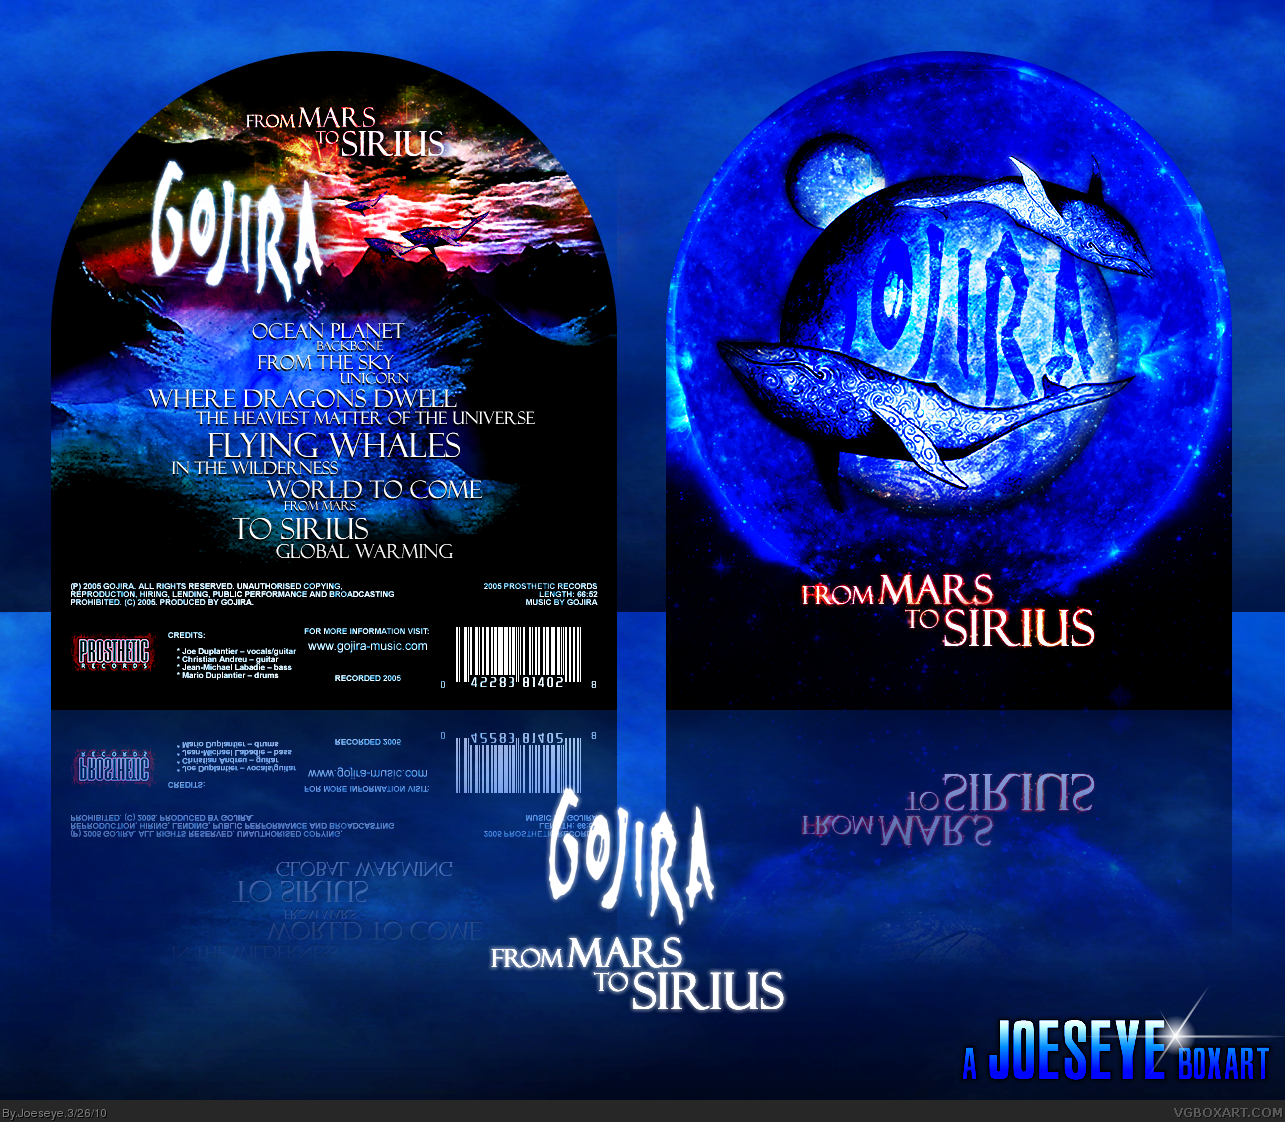 Gojira - From Mars to Sirius box cover